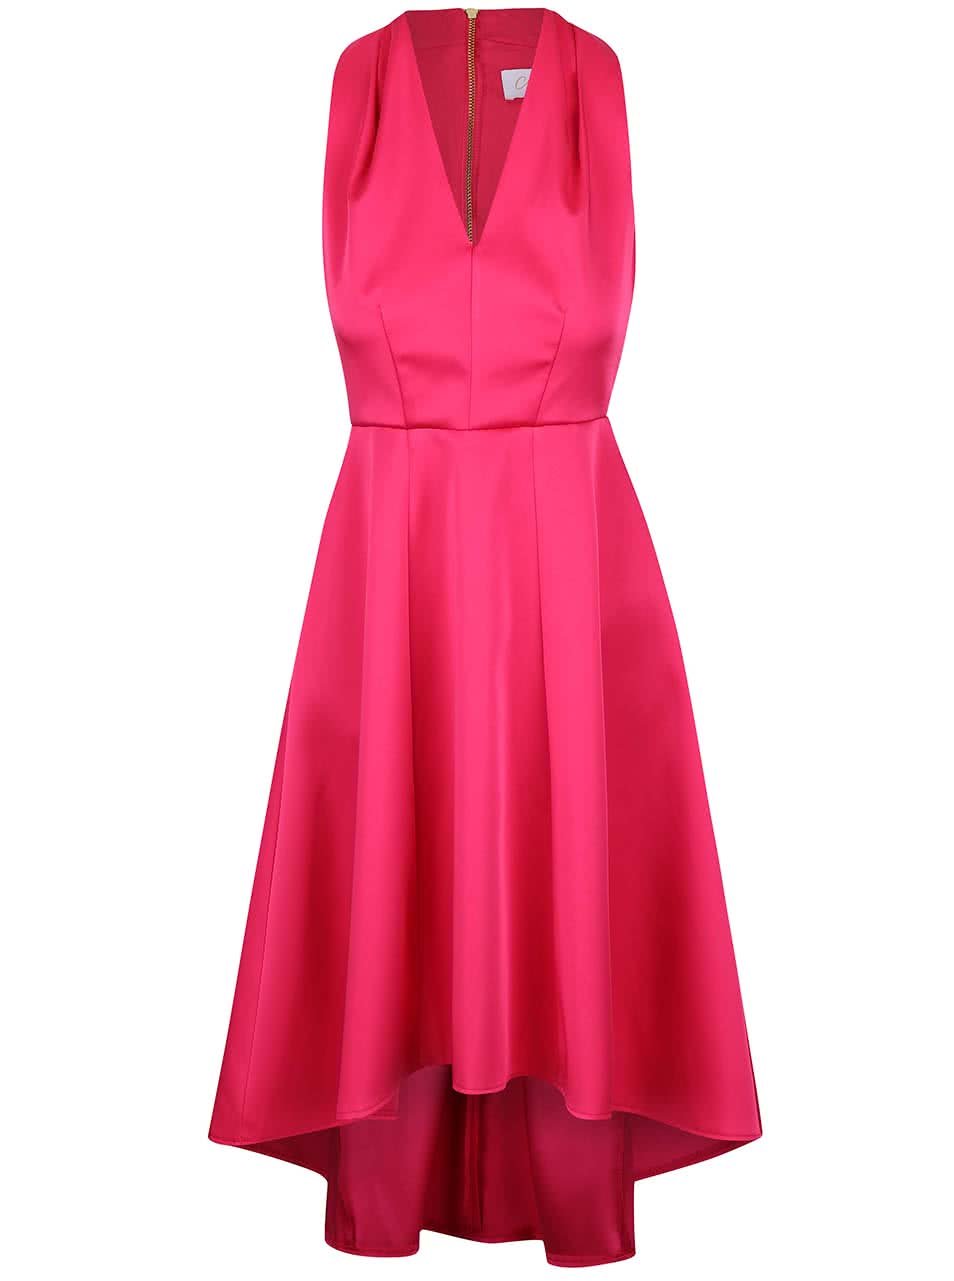 Růžové šaty s prodlouženou zadní délkou sukně Closet